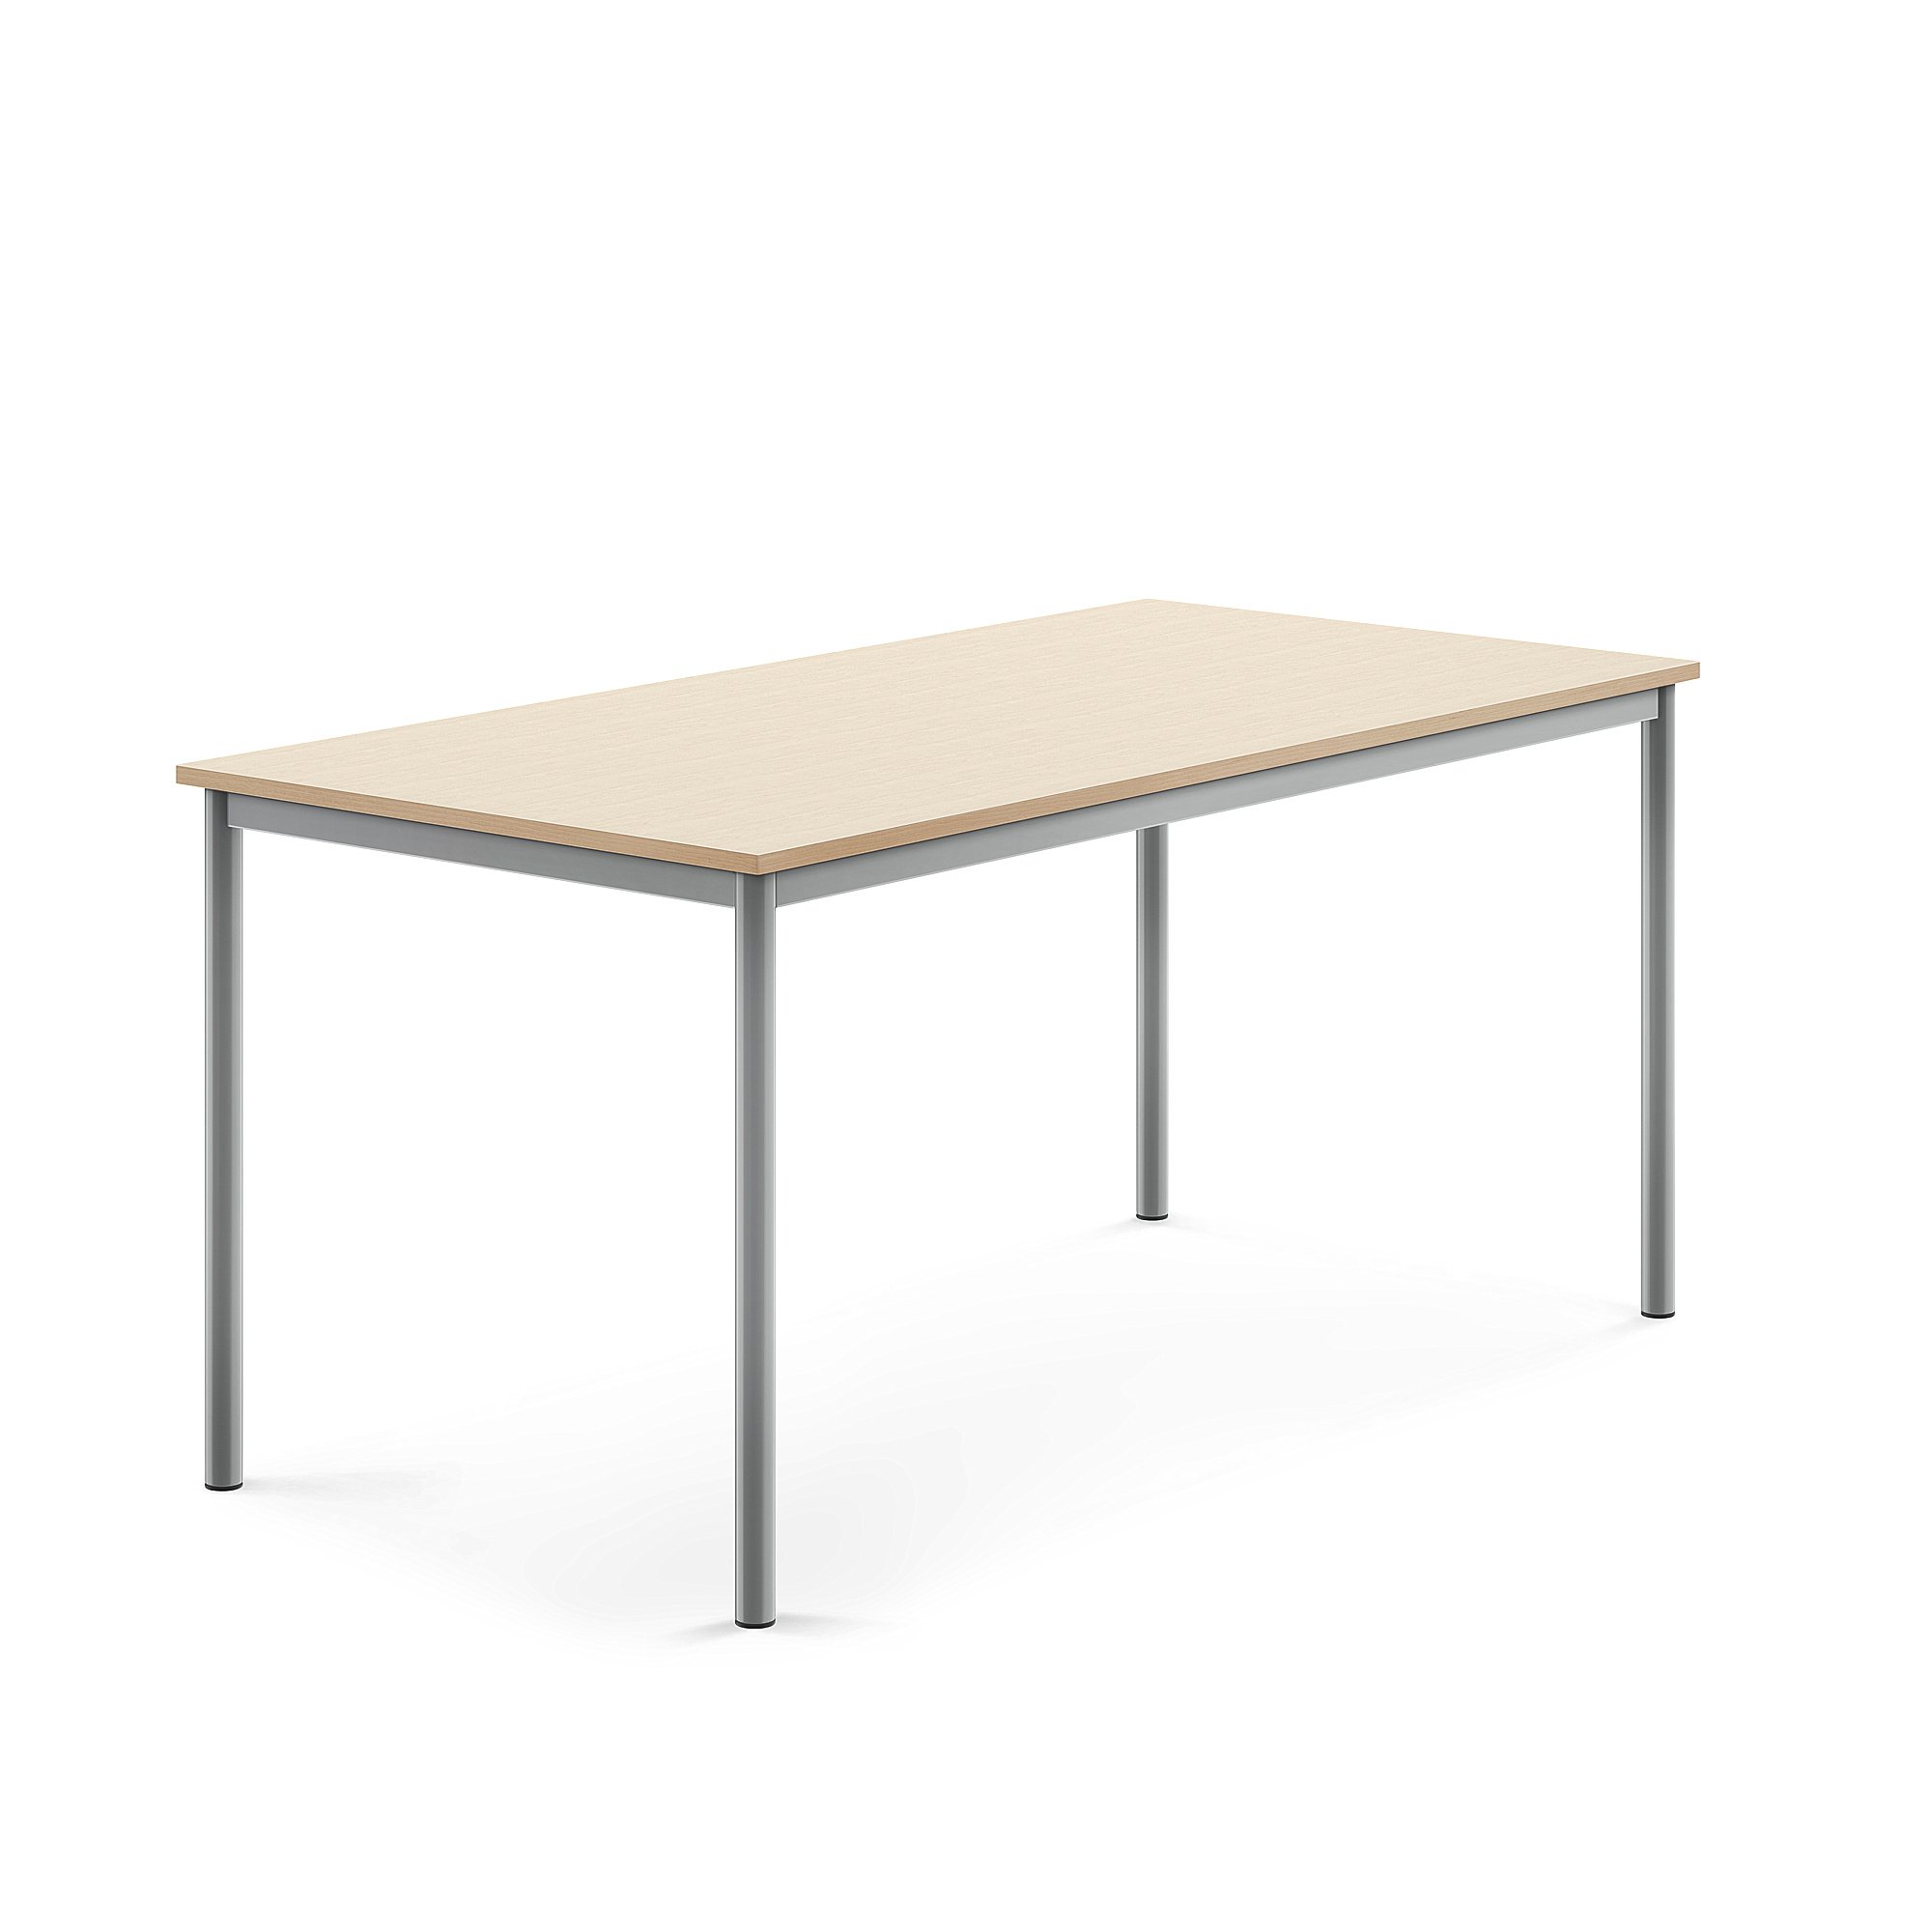 Stôl BORÅS, 1600x800x720 mm, laminát - breza, strieborná